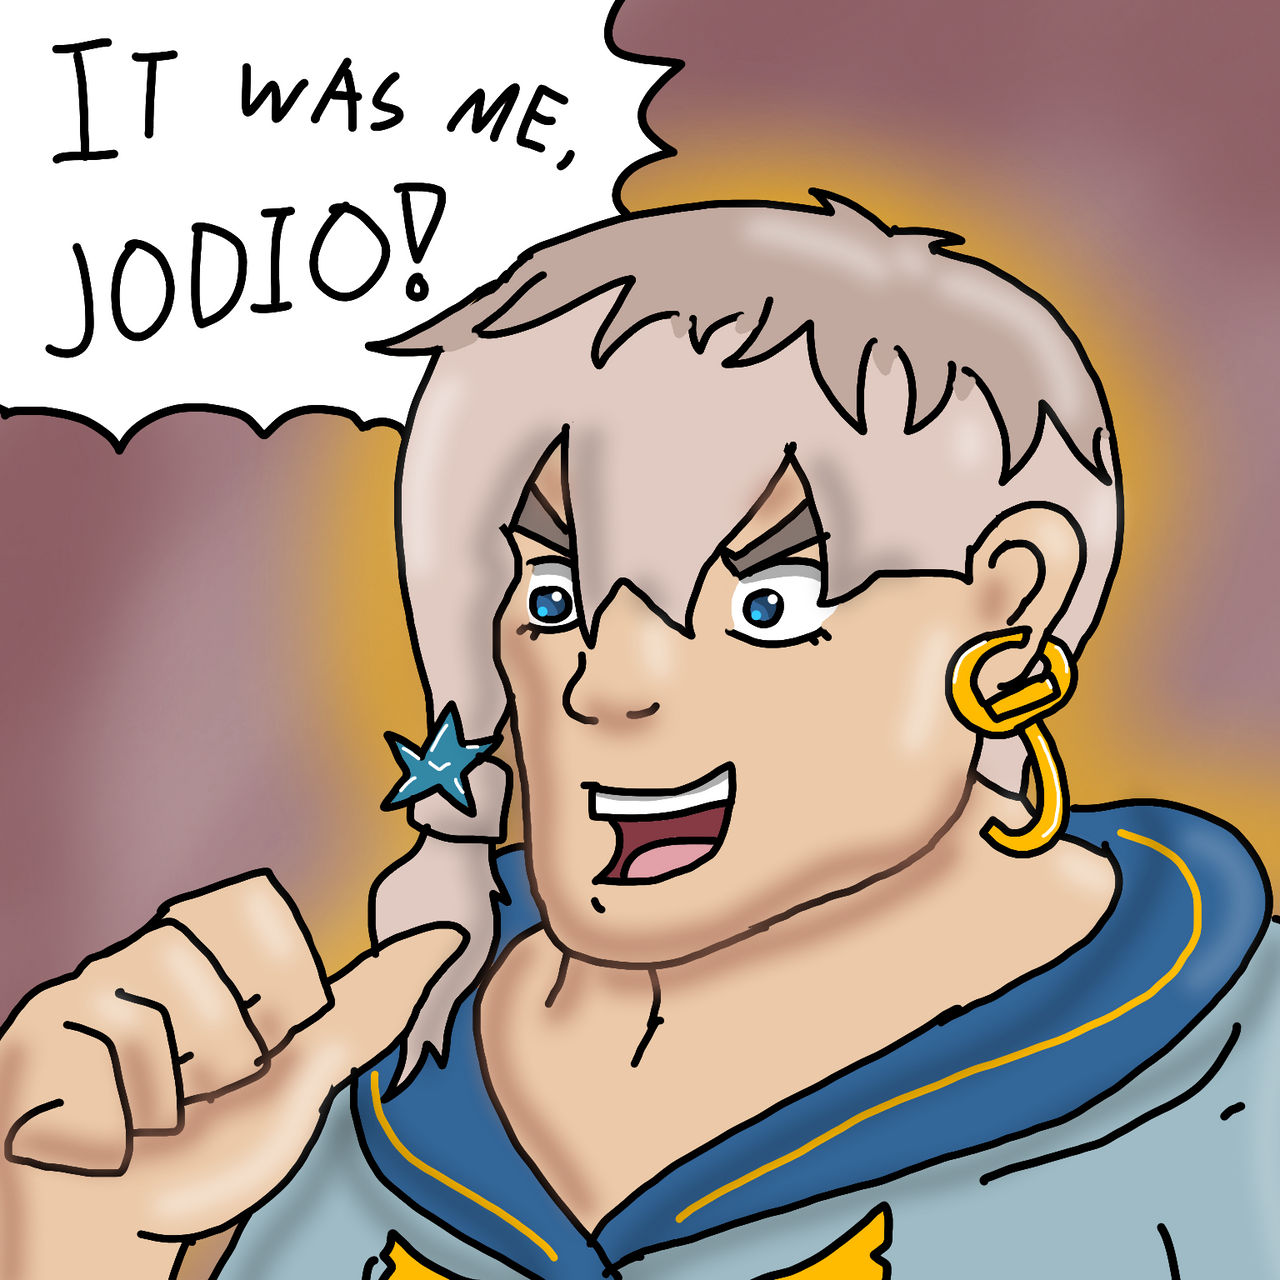 Giorno & Jodio in 2023  Jojo bizzare adventure, Jojo anime, Jojo memes